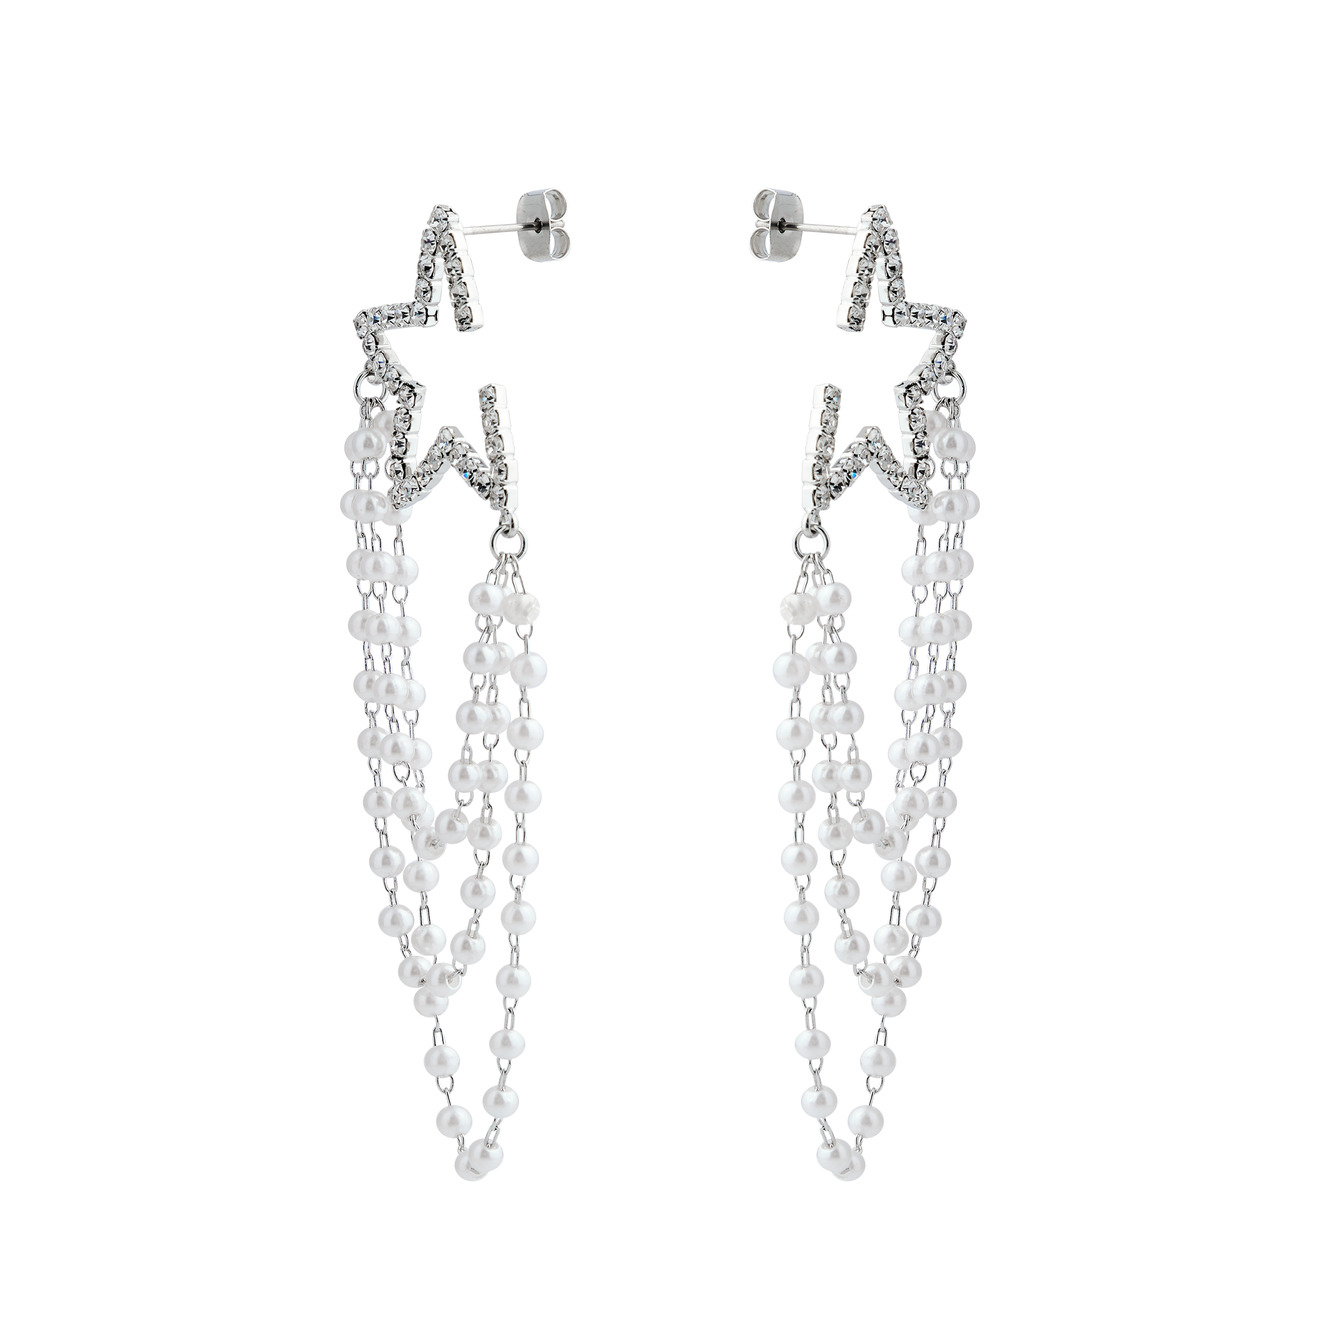 Herald Percy Серебристые серьги-звезды с кристаллами и белыми бусинами aqua серебристые серьги с белыми бусинами